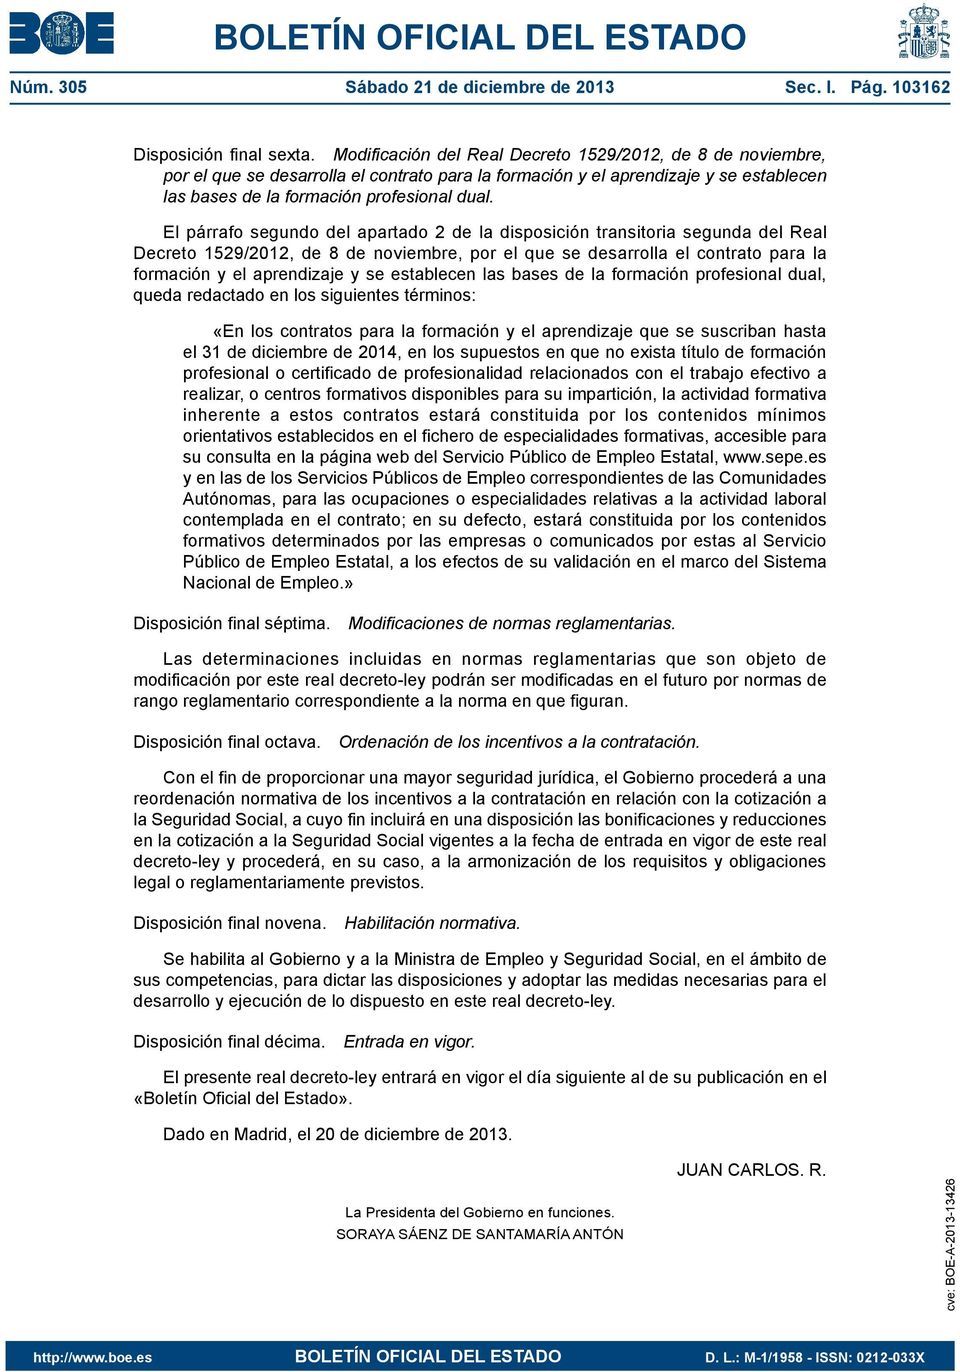 El párrafo segundo del apartado 2 de la disposición transitoria segunda del Real Decreto 1529/2012, de 8 de noviembre, por el que se desarrolla el contrato para la formación y el aprendizaje y se